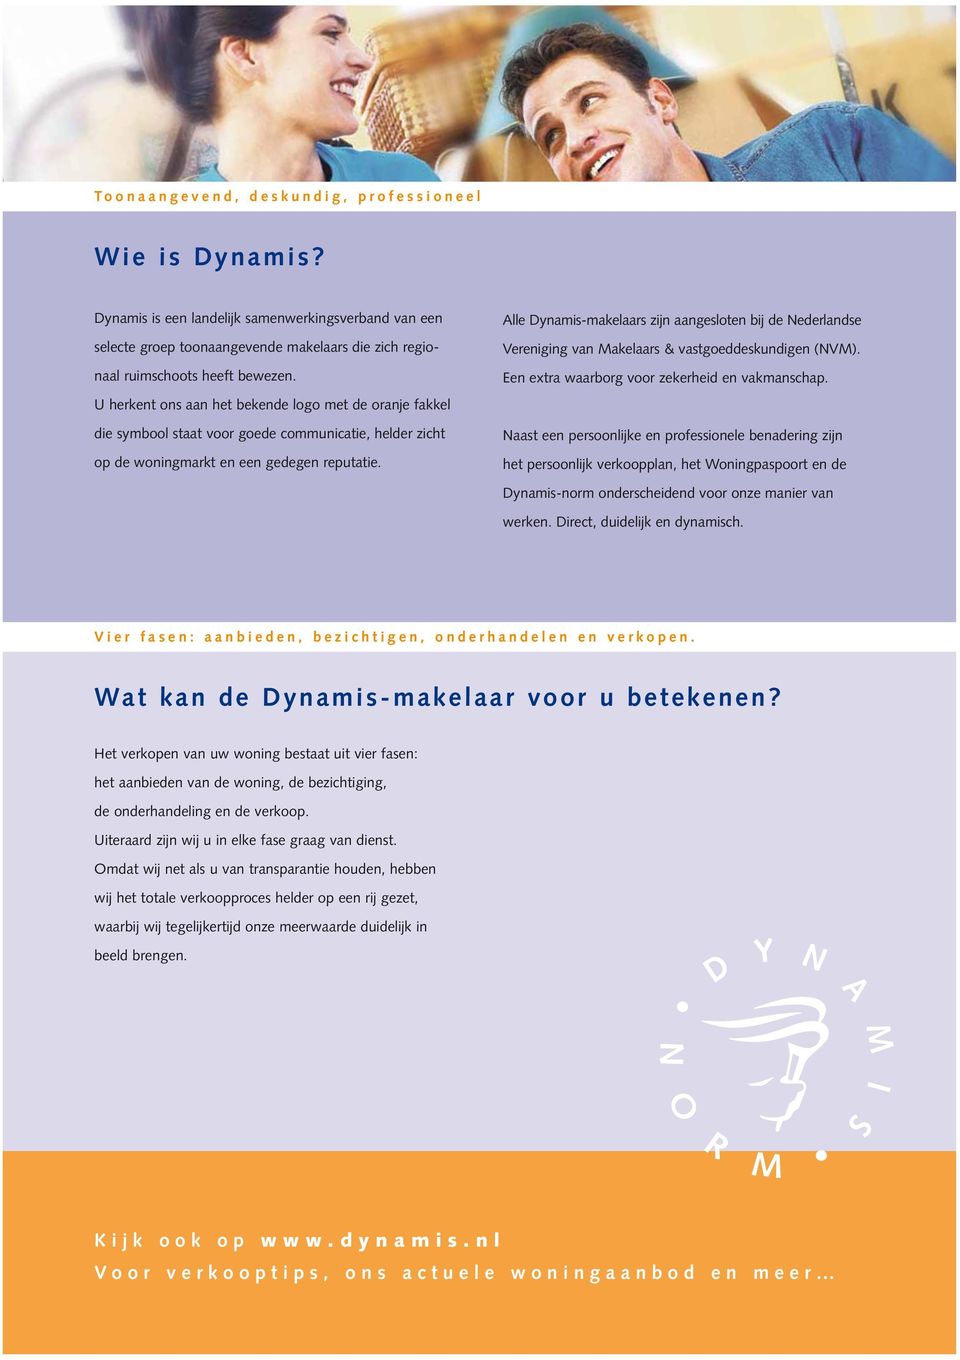 Alle Dynamis-makelaars zijn aangesloten bij de Nederlandse Vereniging van Makelaars & vastgoeddeskundigen (NVM). Een extra waarborg voor zekerheid en vakmanschap.